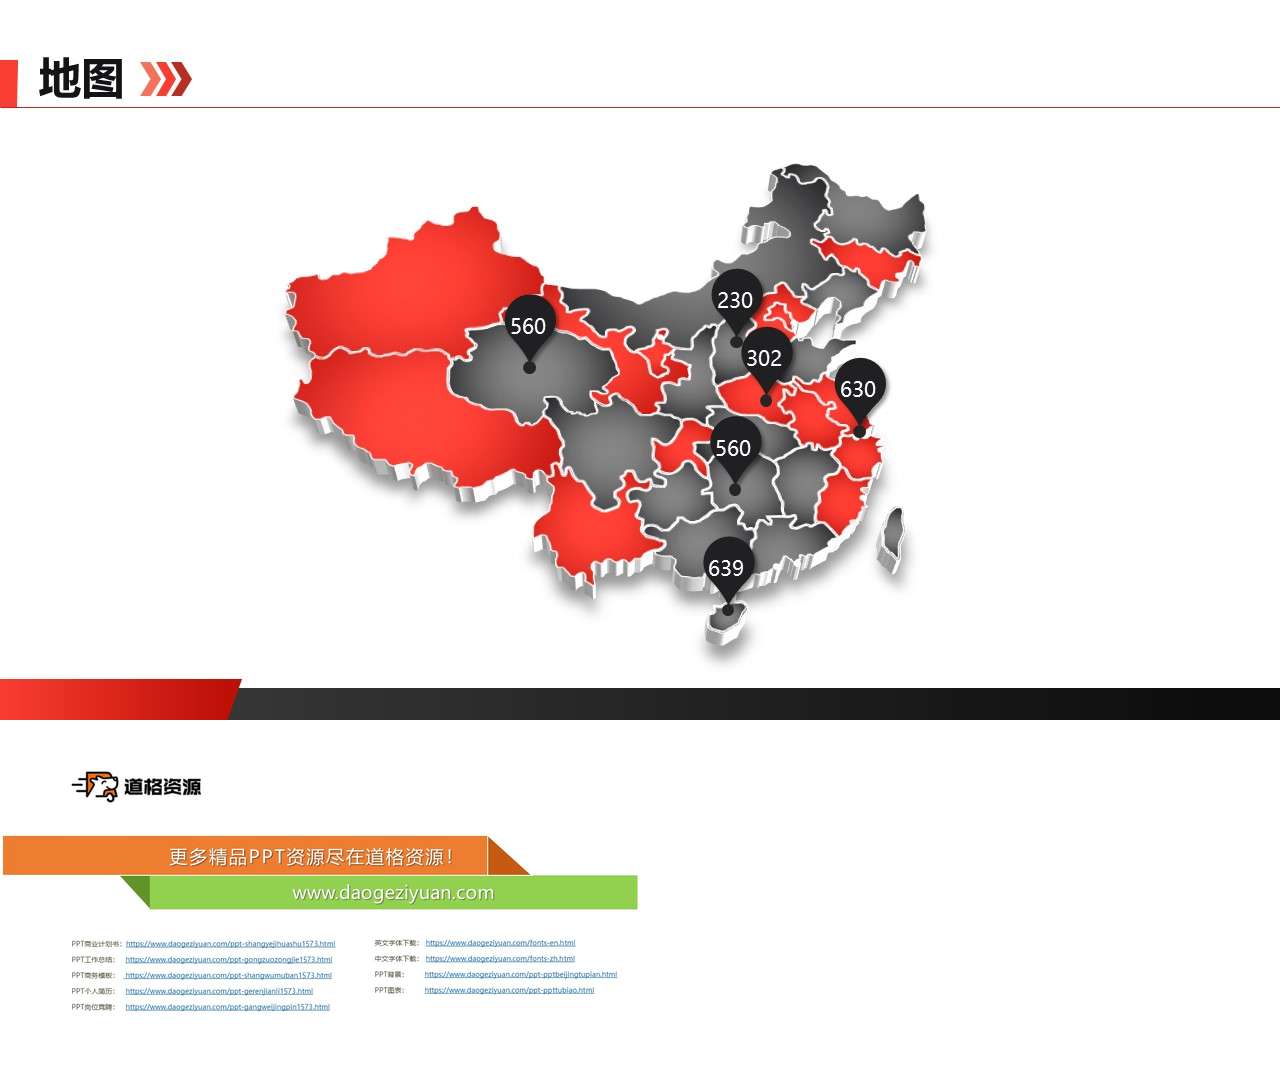 立体中国地图PPT模板素材